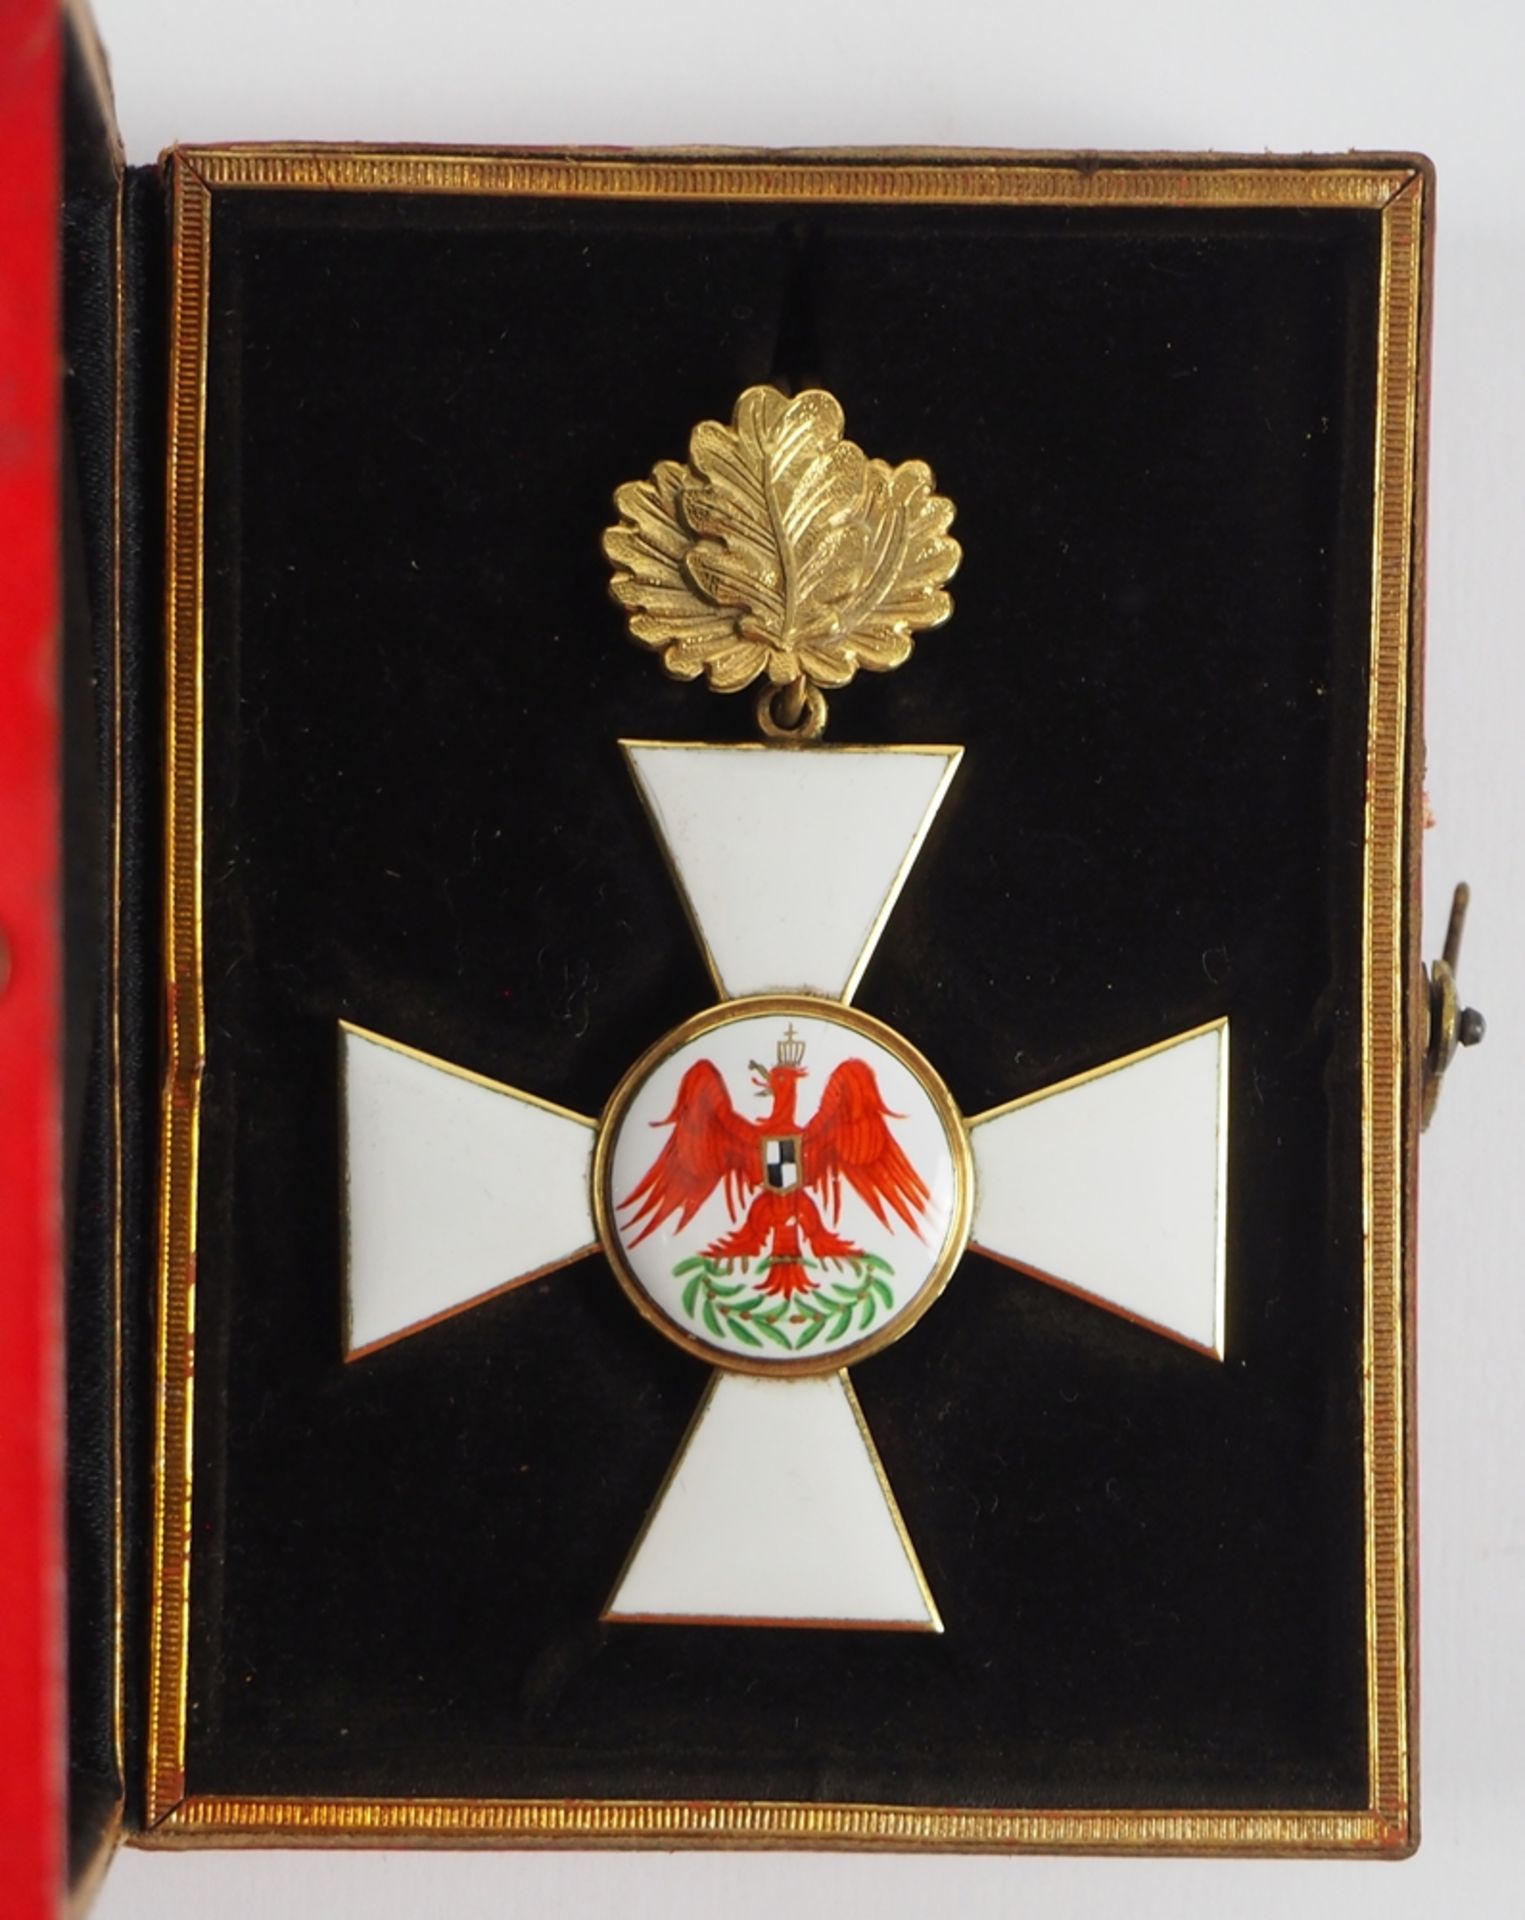 Preussen: Roter Adler Orden, 4. Modell (1885-1917), 2. Klasse mit Eichenlaub, im Etui.